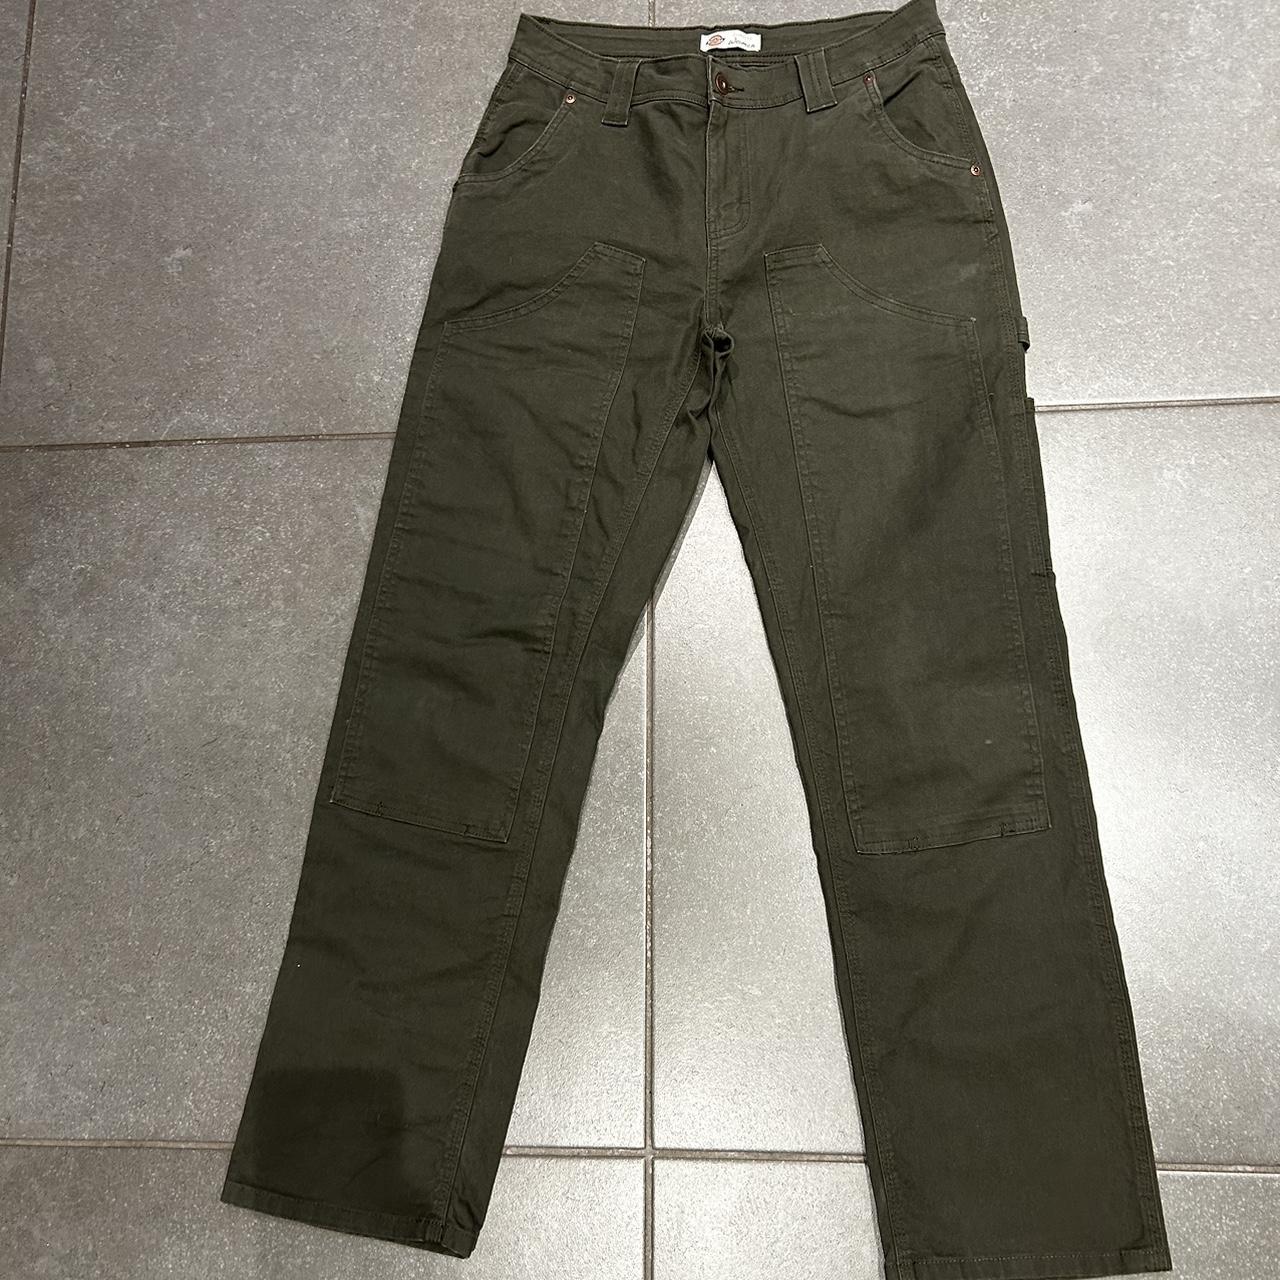 dickies green carpenter pants size 27 waist but fit... - Depop